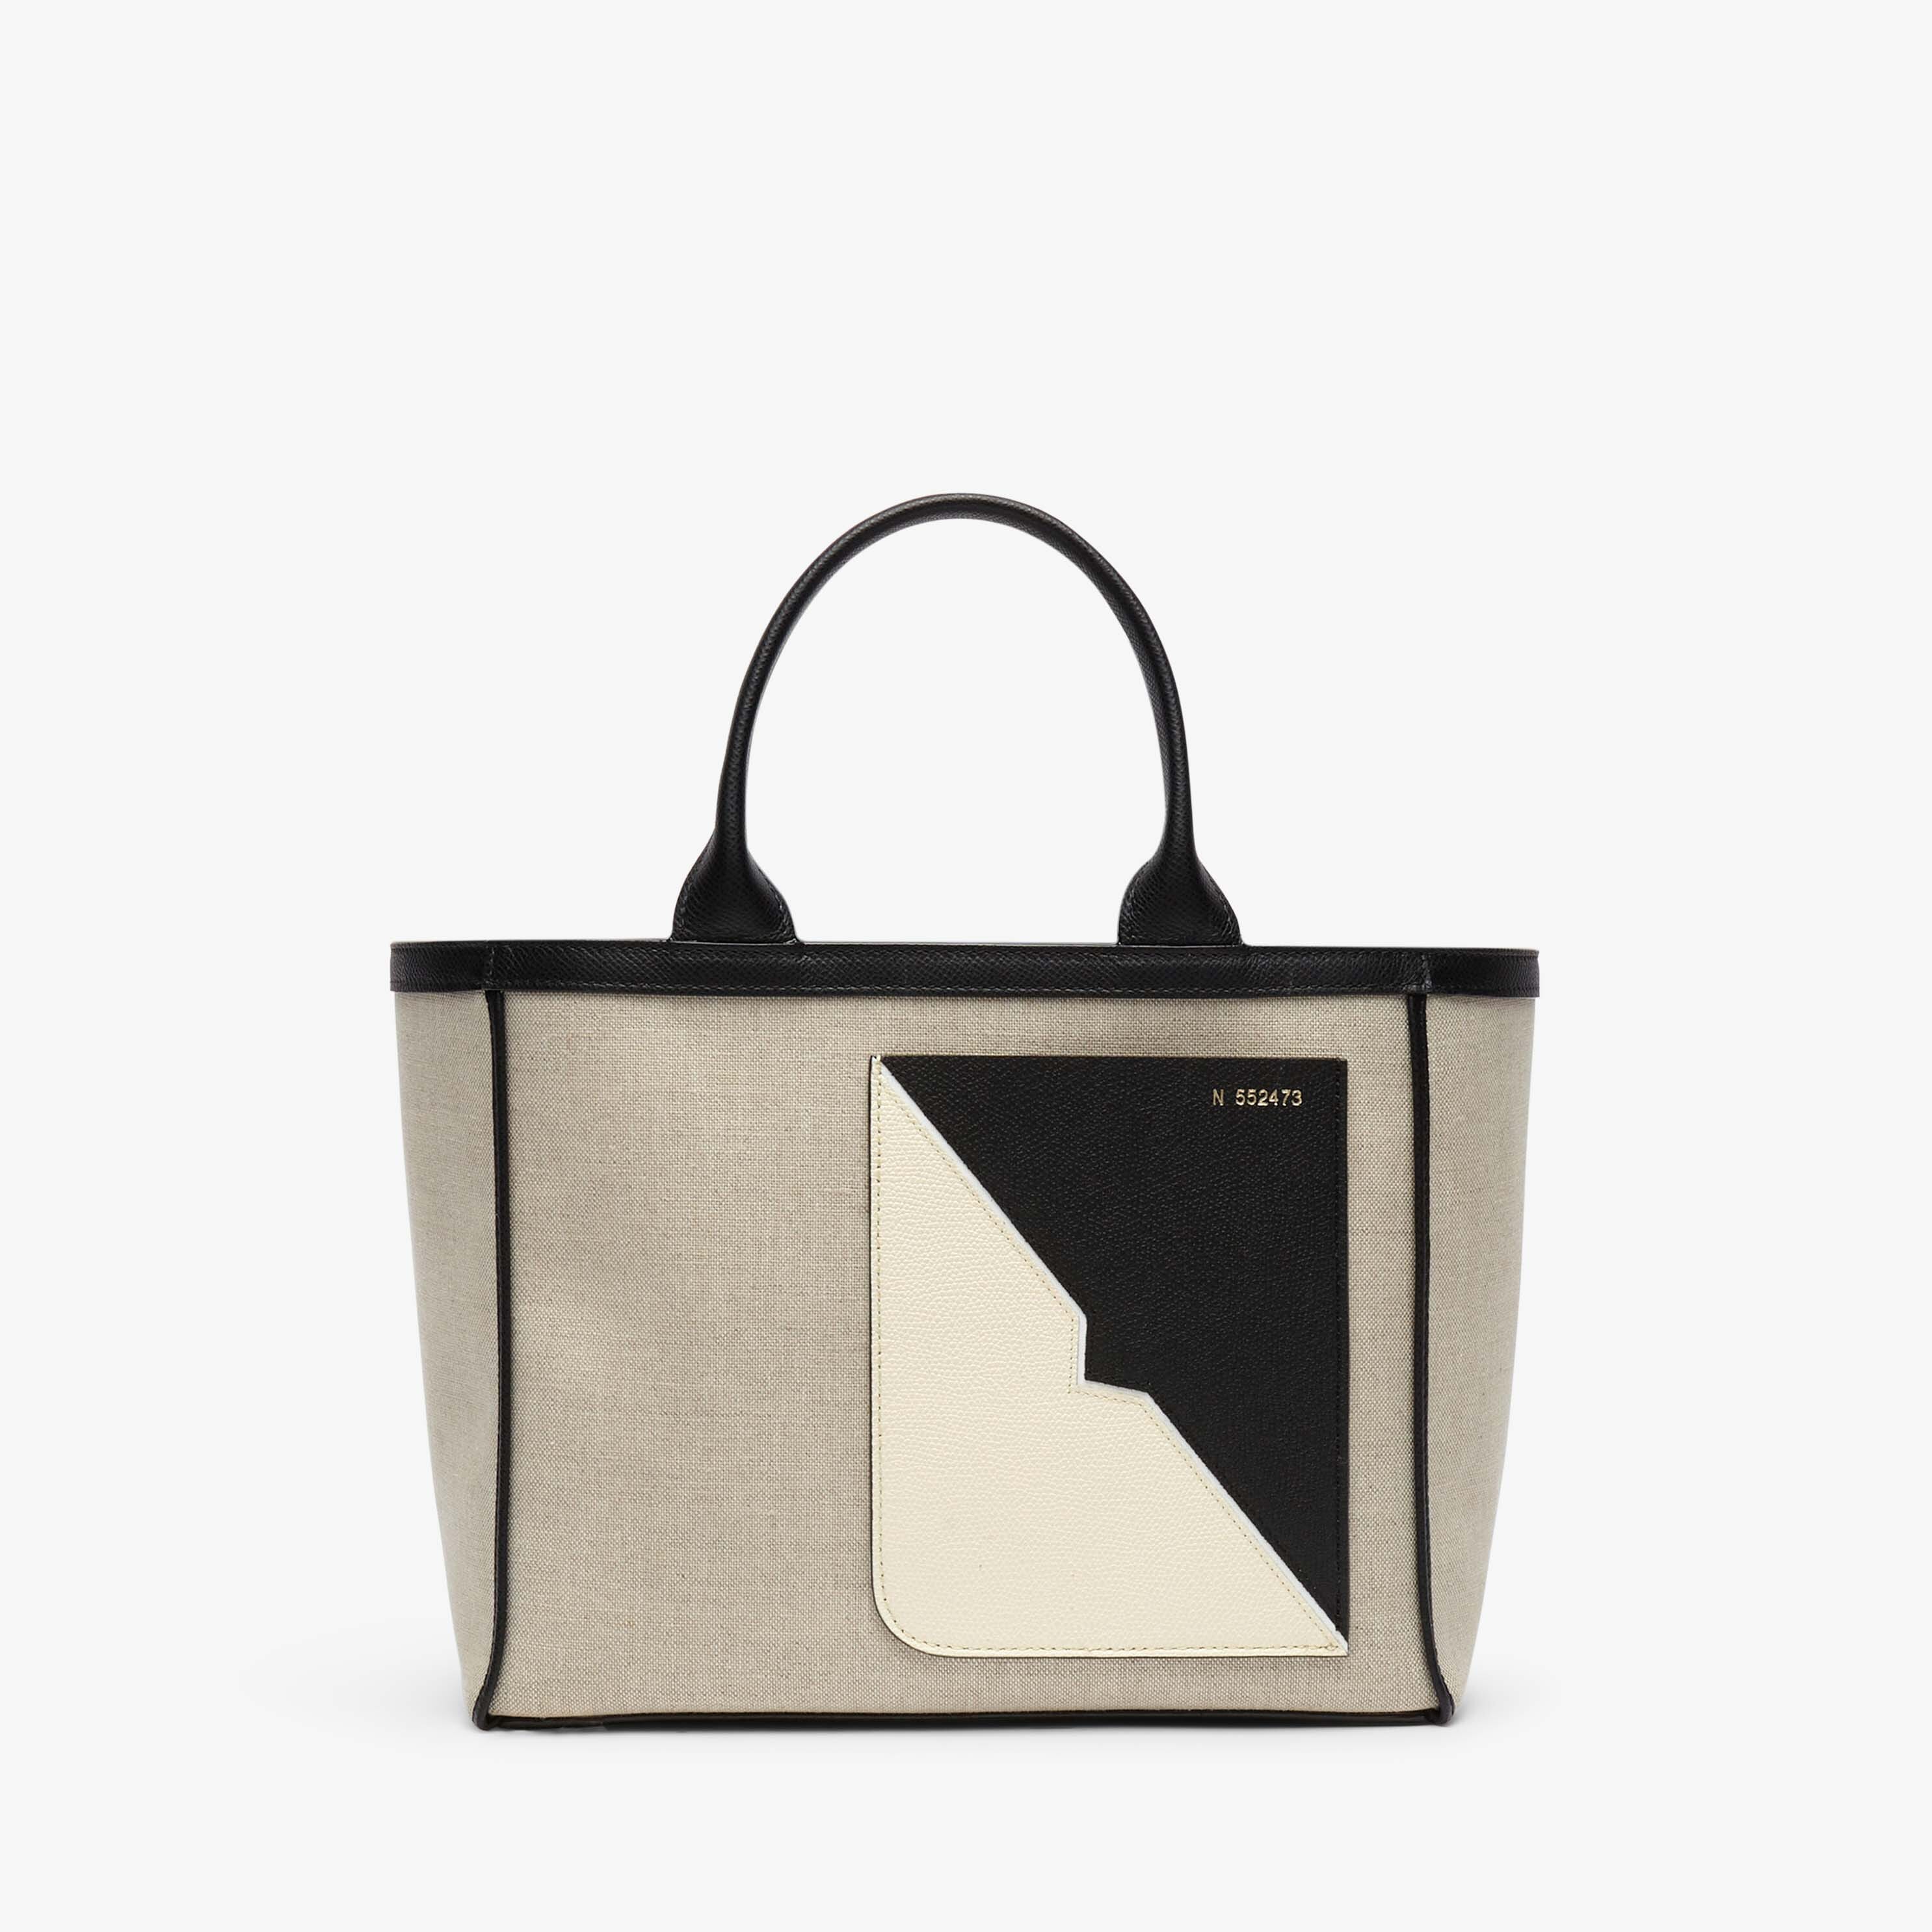 Soft Canvas V Tote Mini Bag - Sand Brown/Black/Pergamena White - Tessuto Canvas/Vitello VS Intarsio V New - Valextra - 1